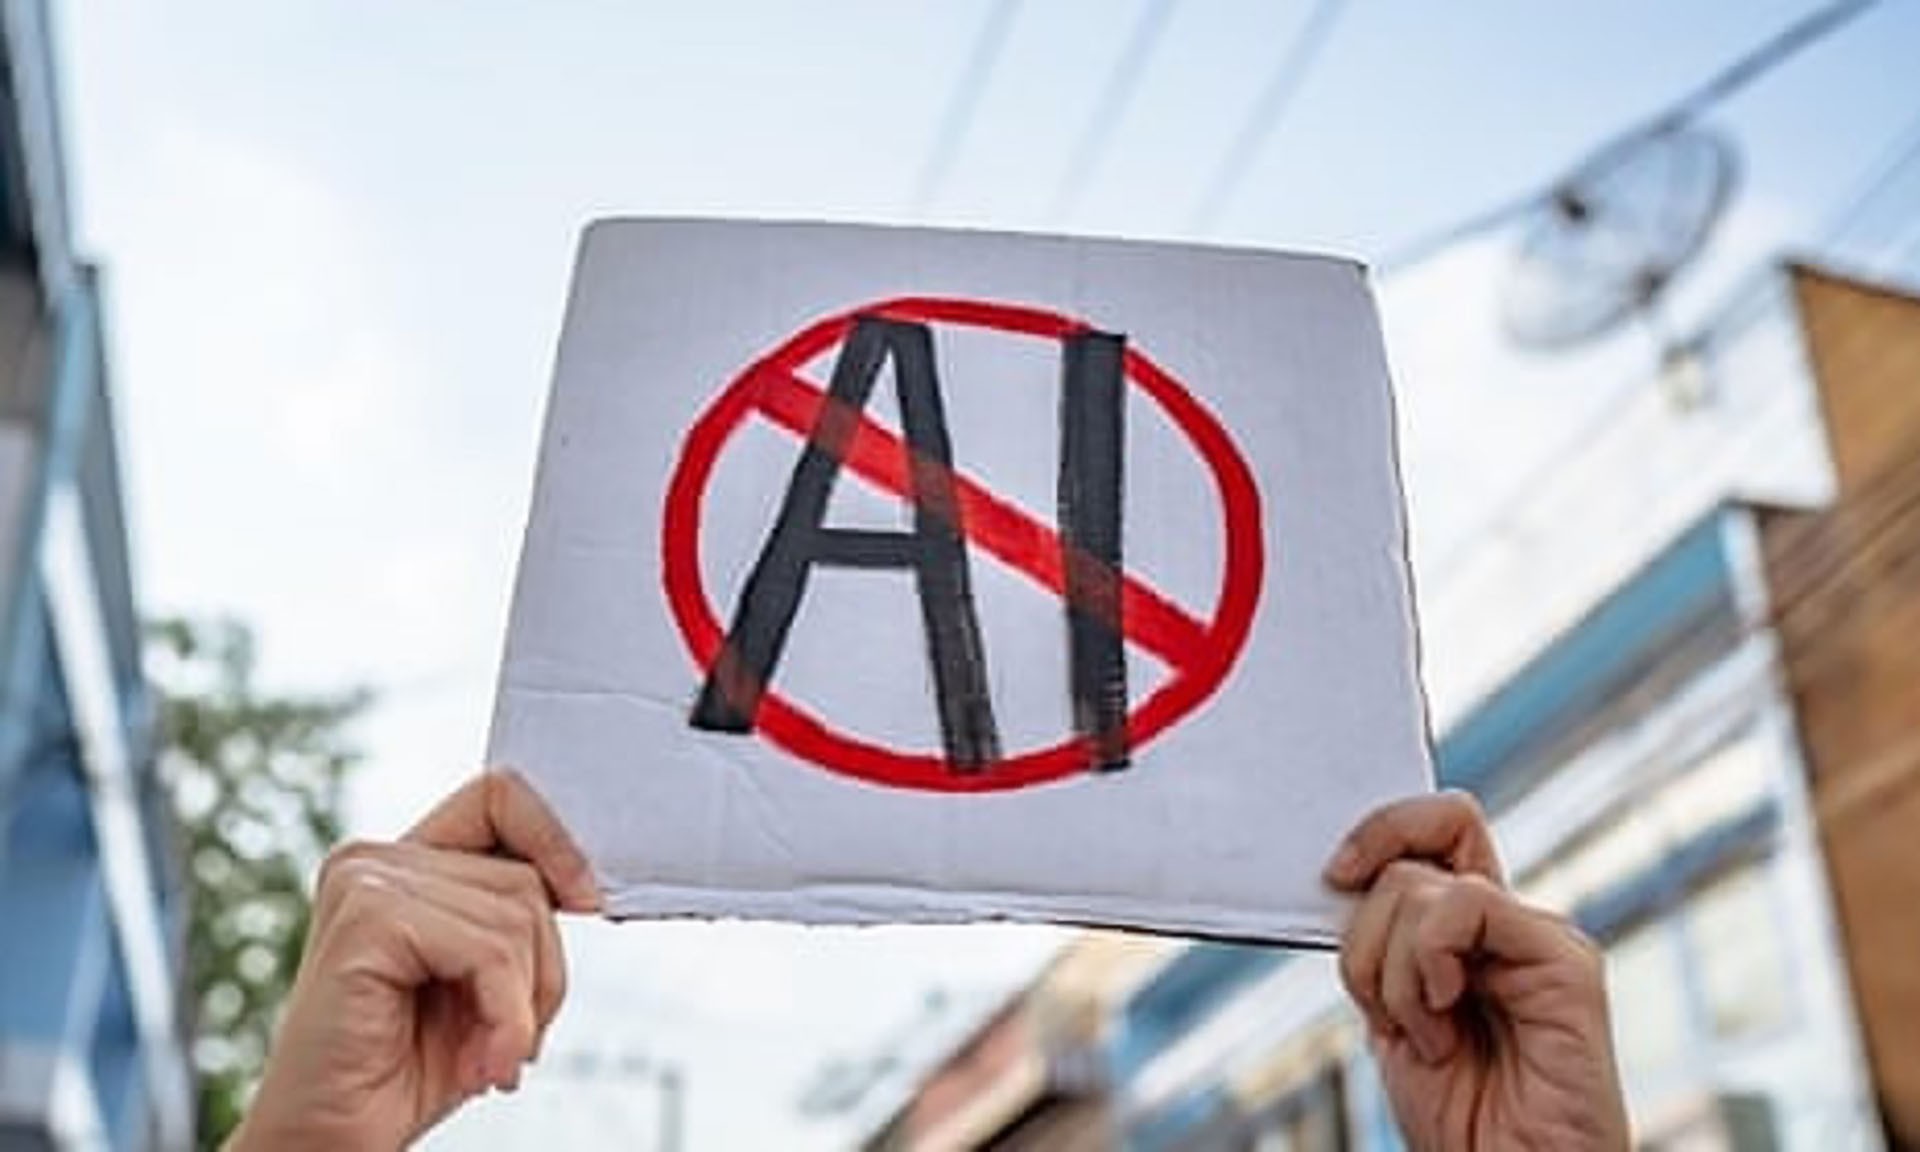 Tại Italy, một người biểu tình cầm tấm bảng “Không AI”. ChatGPT bị cấm sau khi cơ quan quản lý cho biết không có cơ sở pháp lý nào để biện minh cho việc thu thập và lưu trữ dữ liệu cá nhân. (Nguồn: Wachiwit/Alamy)